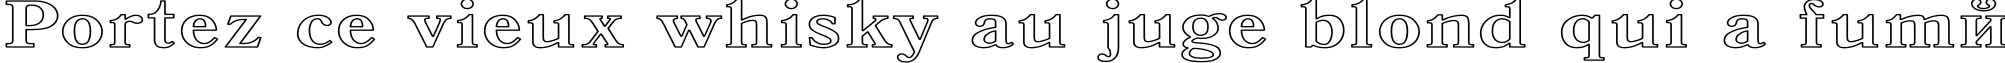 Пример написания шрифтом Antiqua HW текста на французском